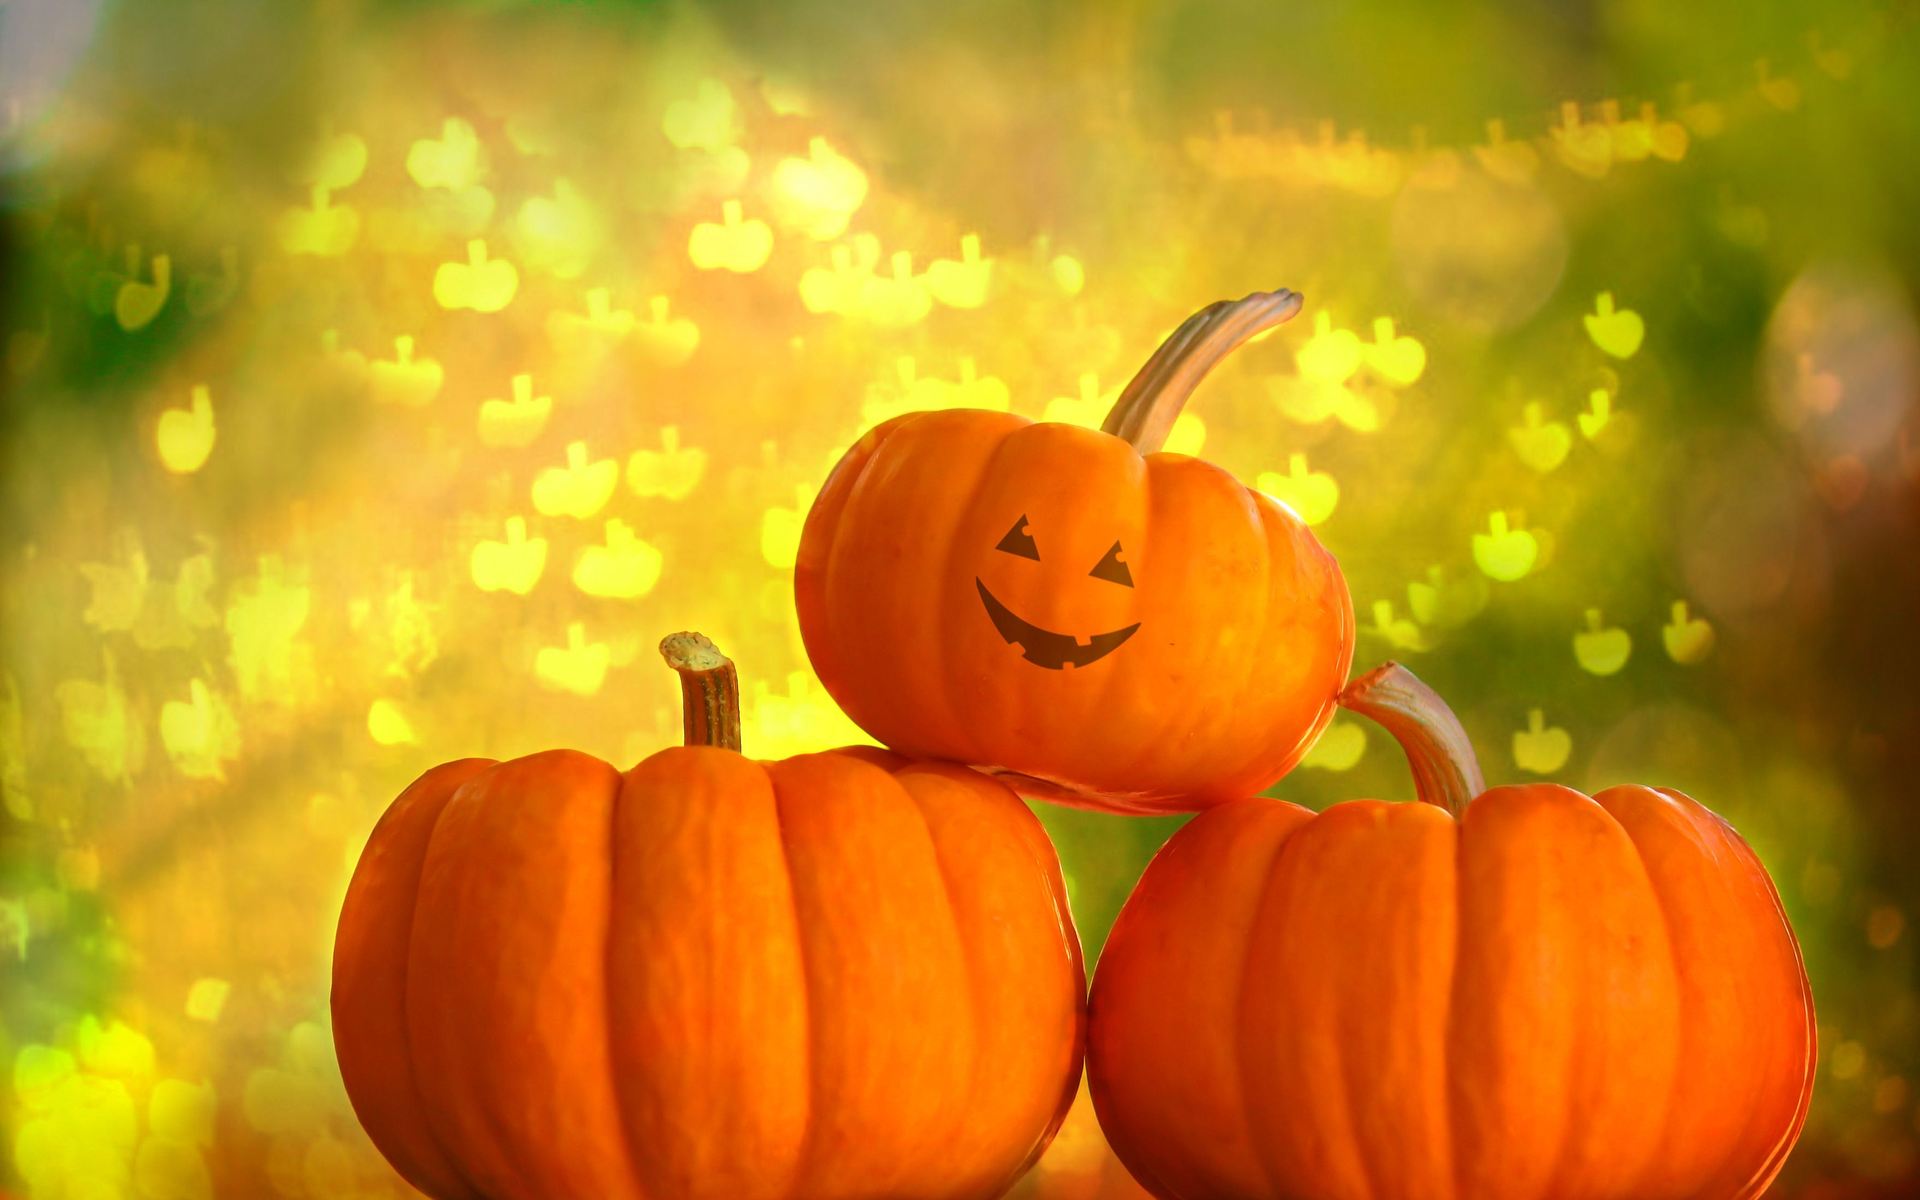 Pumpkin Pictures For Desktop